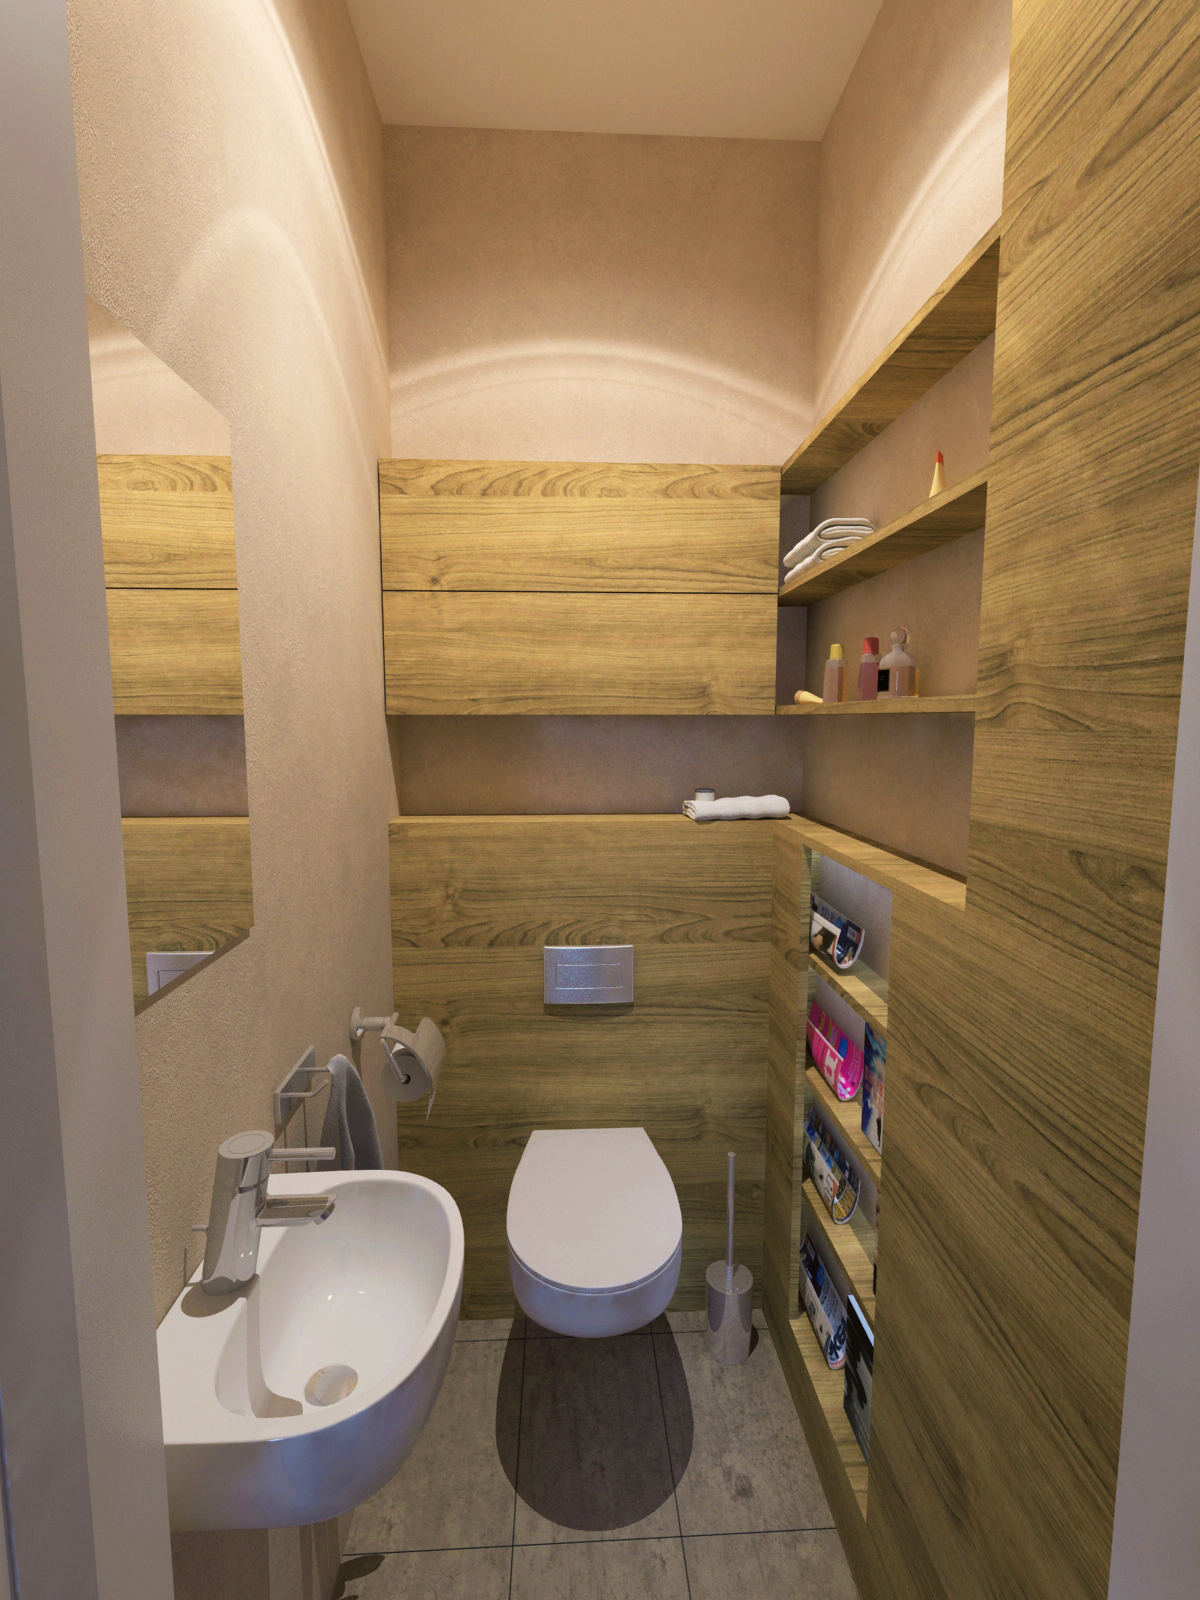 Látványterv mosdó / Architectural visualization WC